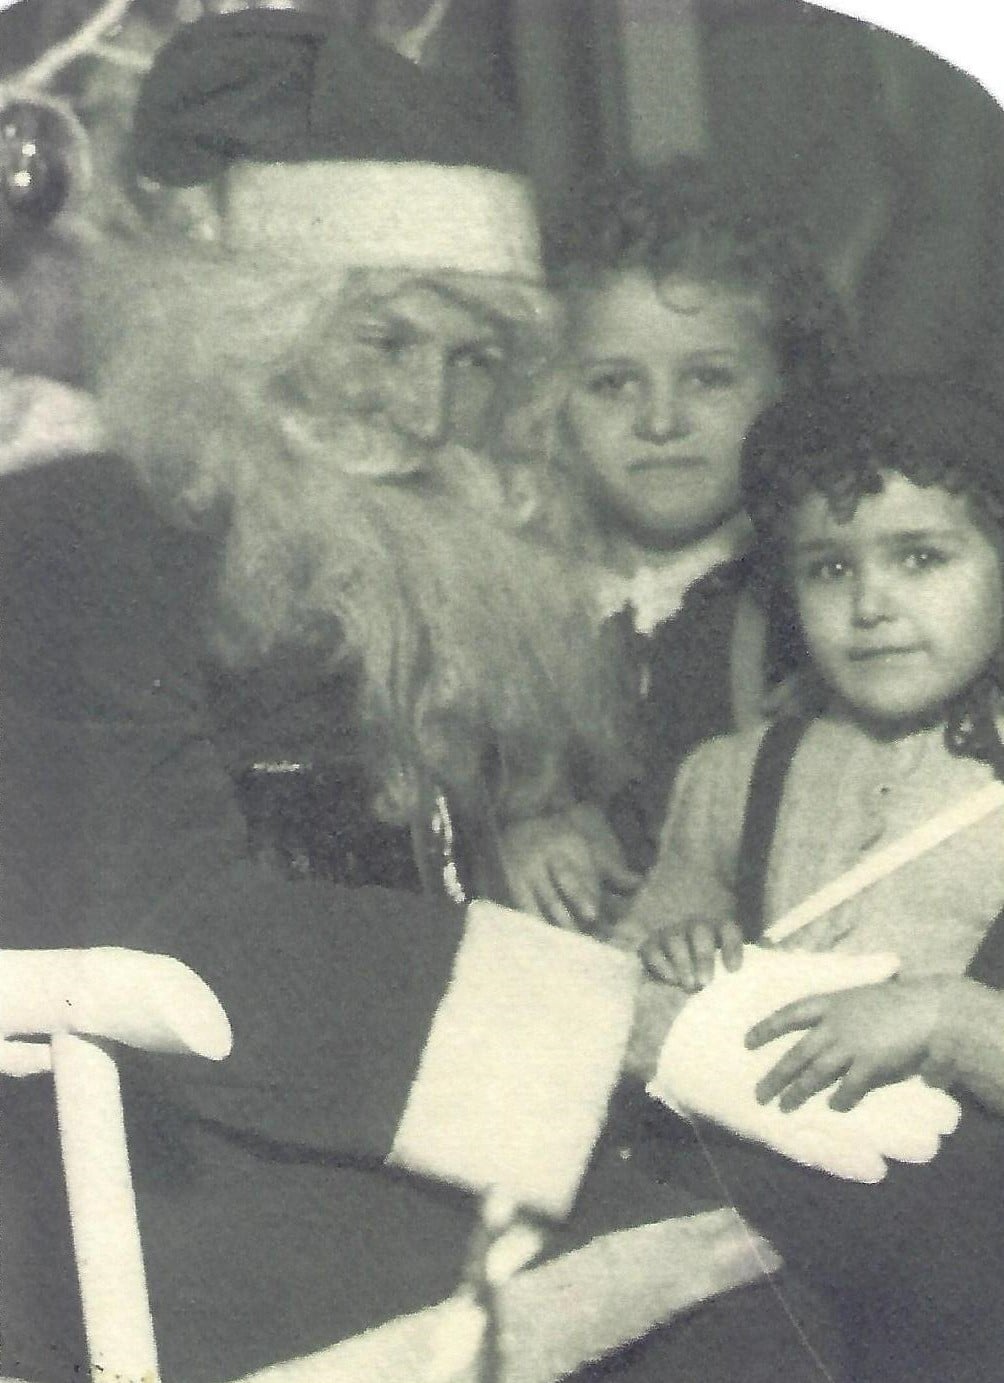 Carol og Roberta på julemandens knæ. Forbedret og repareret af MyHeritage